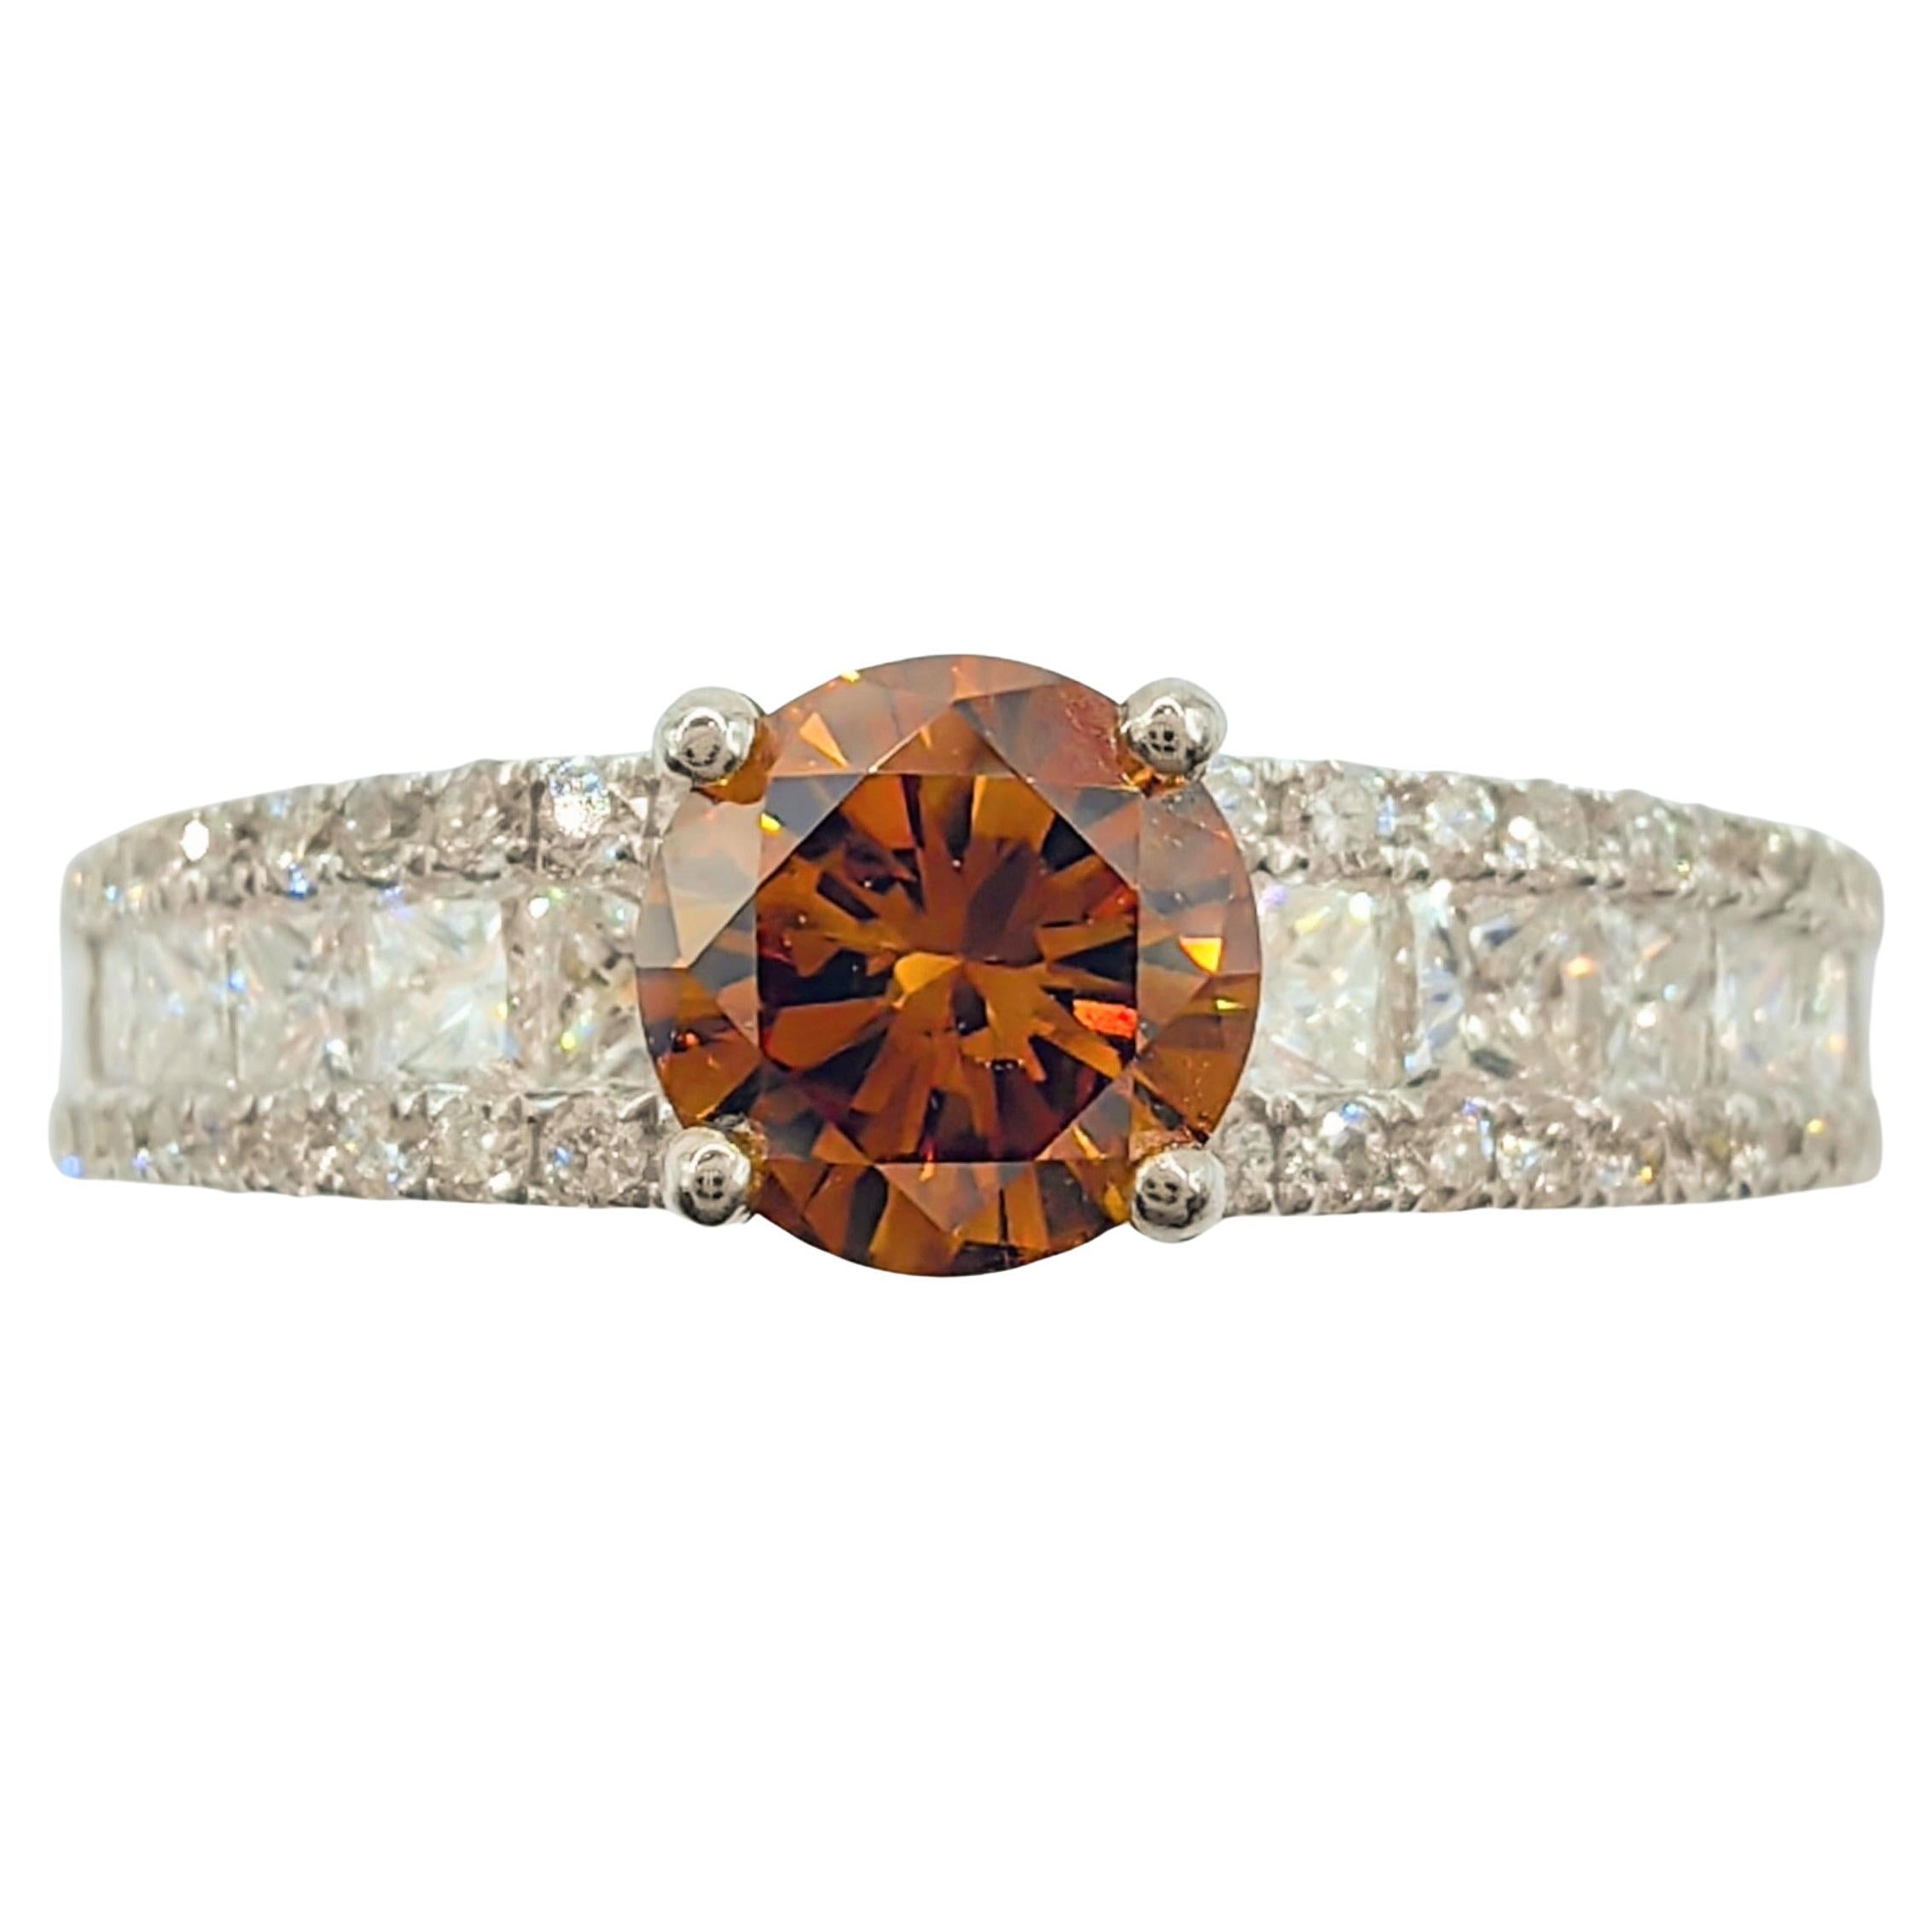 GIA Certified .51 Carat Fancy Deep Orange-Brown Diamond Ring in 18K White Gold